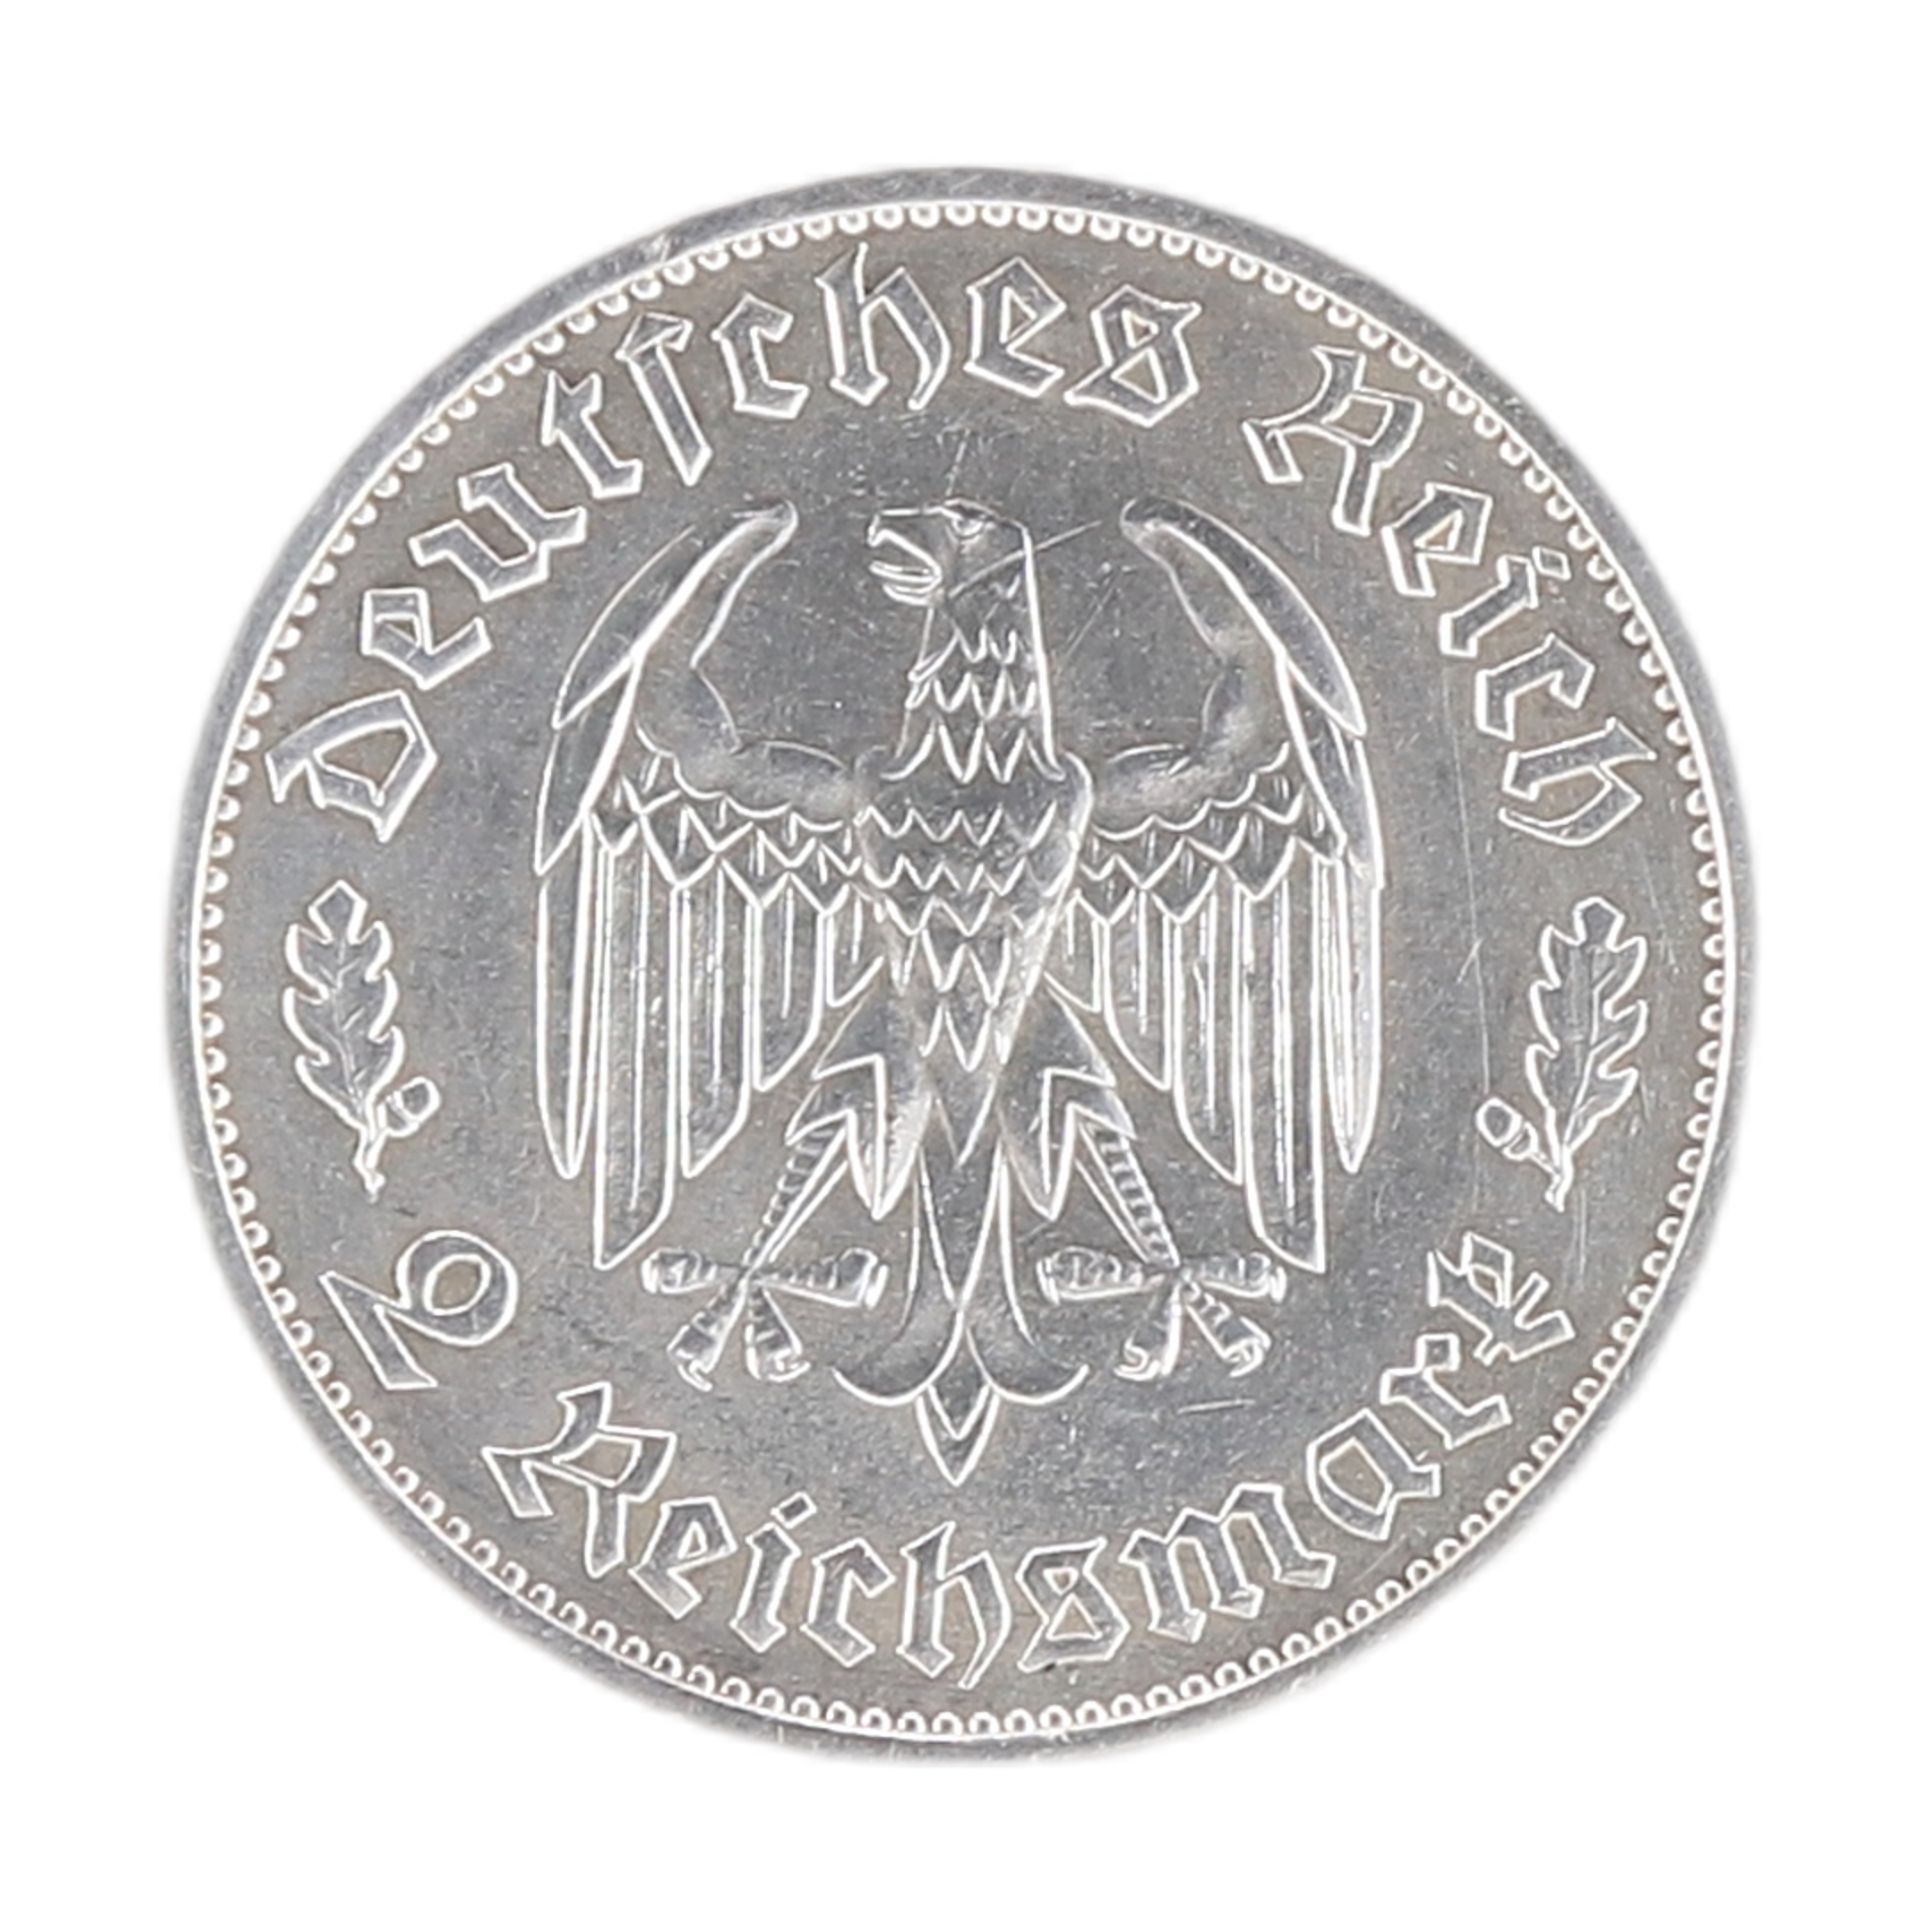 2 Reichsmark, Third Reich, Friedrich Schiller, 1934 - Image 2 of 2